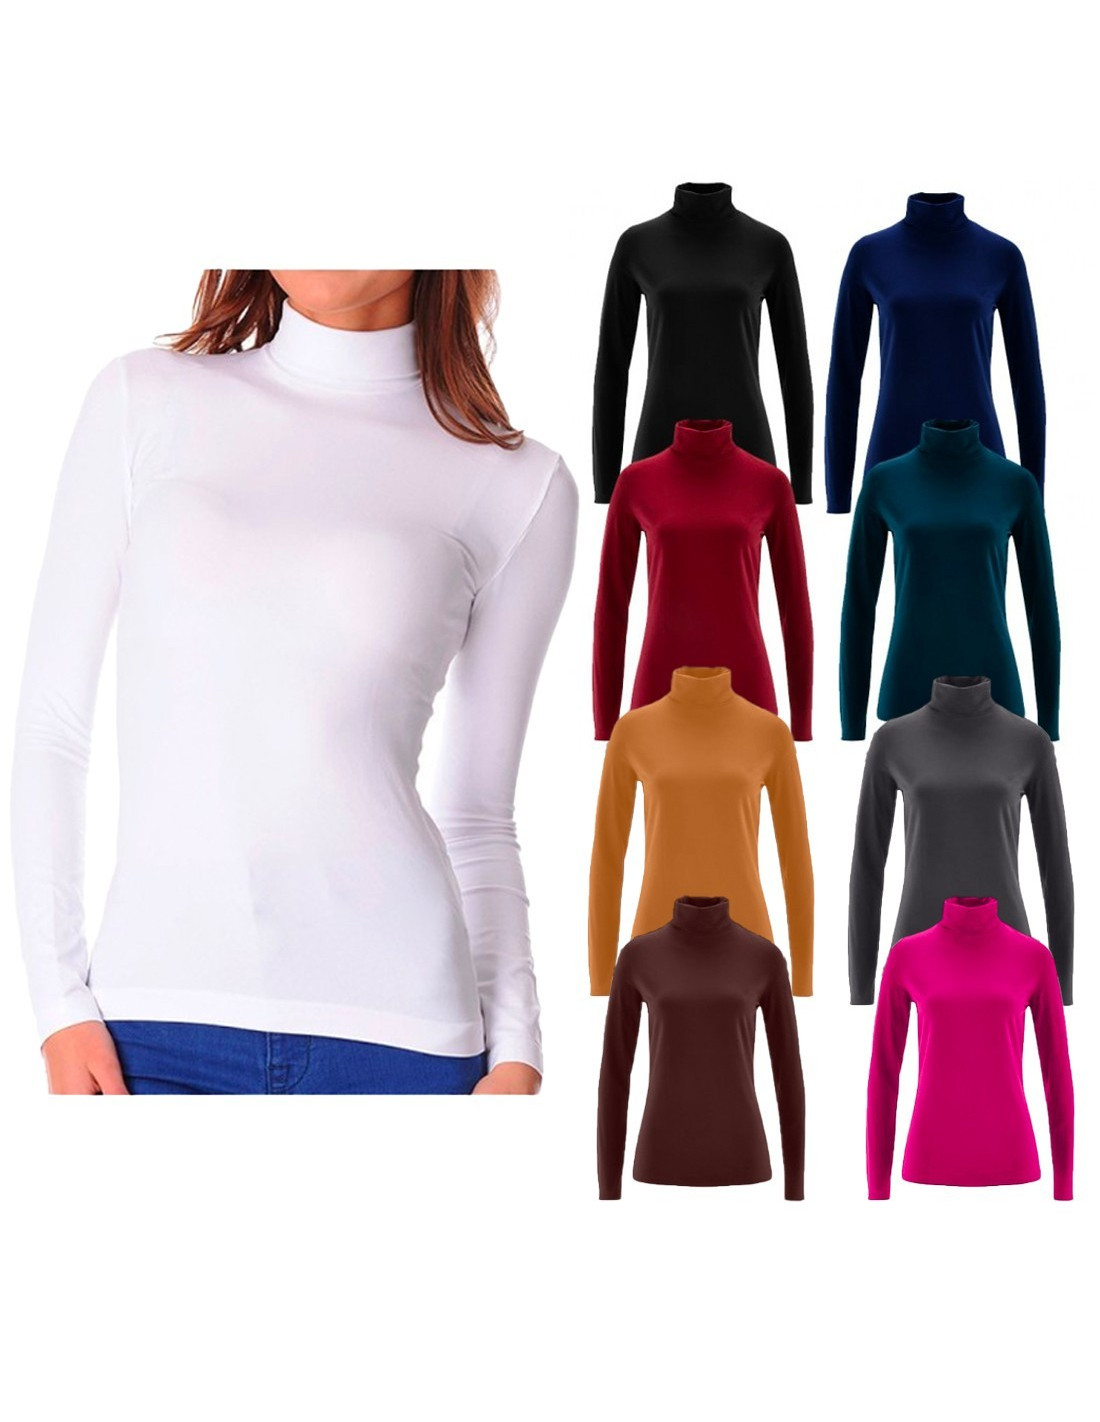  Camiseta interior básica de cuello alto para mujer, manga larga,  térmica, ajustada, suave, blusas, A01_(ofertas de viernes negro)azul :  Ropa, Zapatos y Joyería